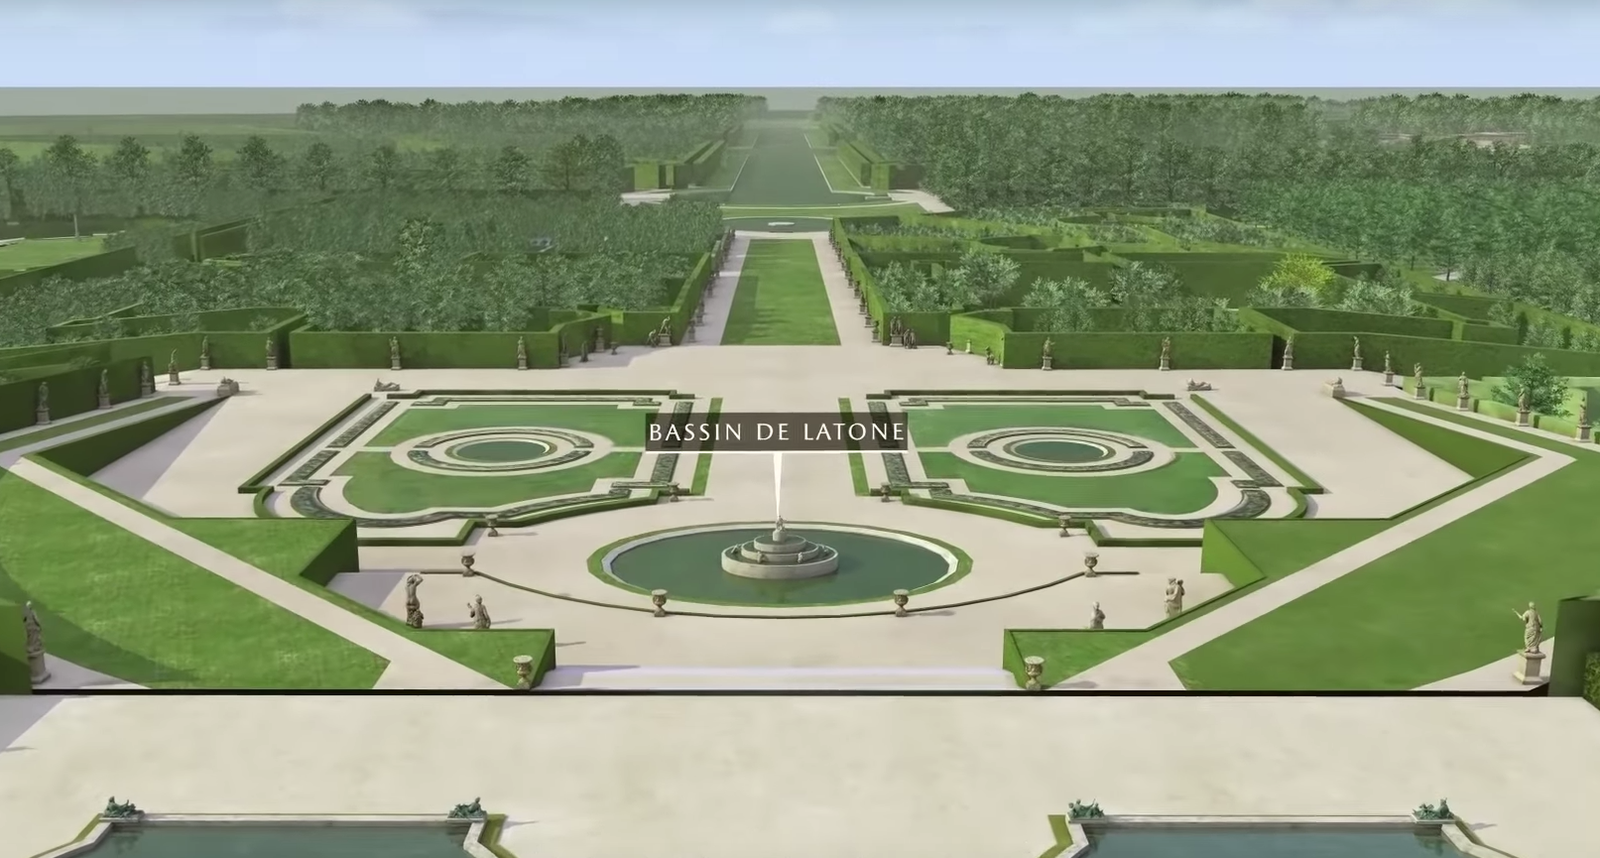 “Дворец ваш” Google выпустил VRтур по Версальскому дворцу